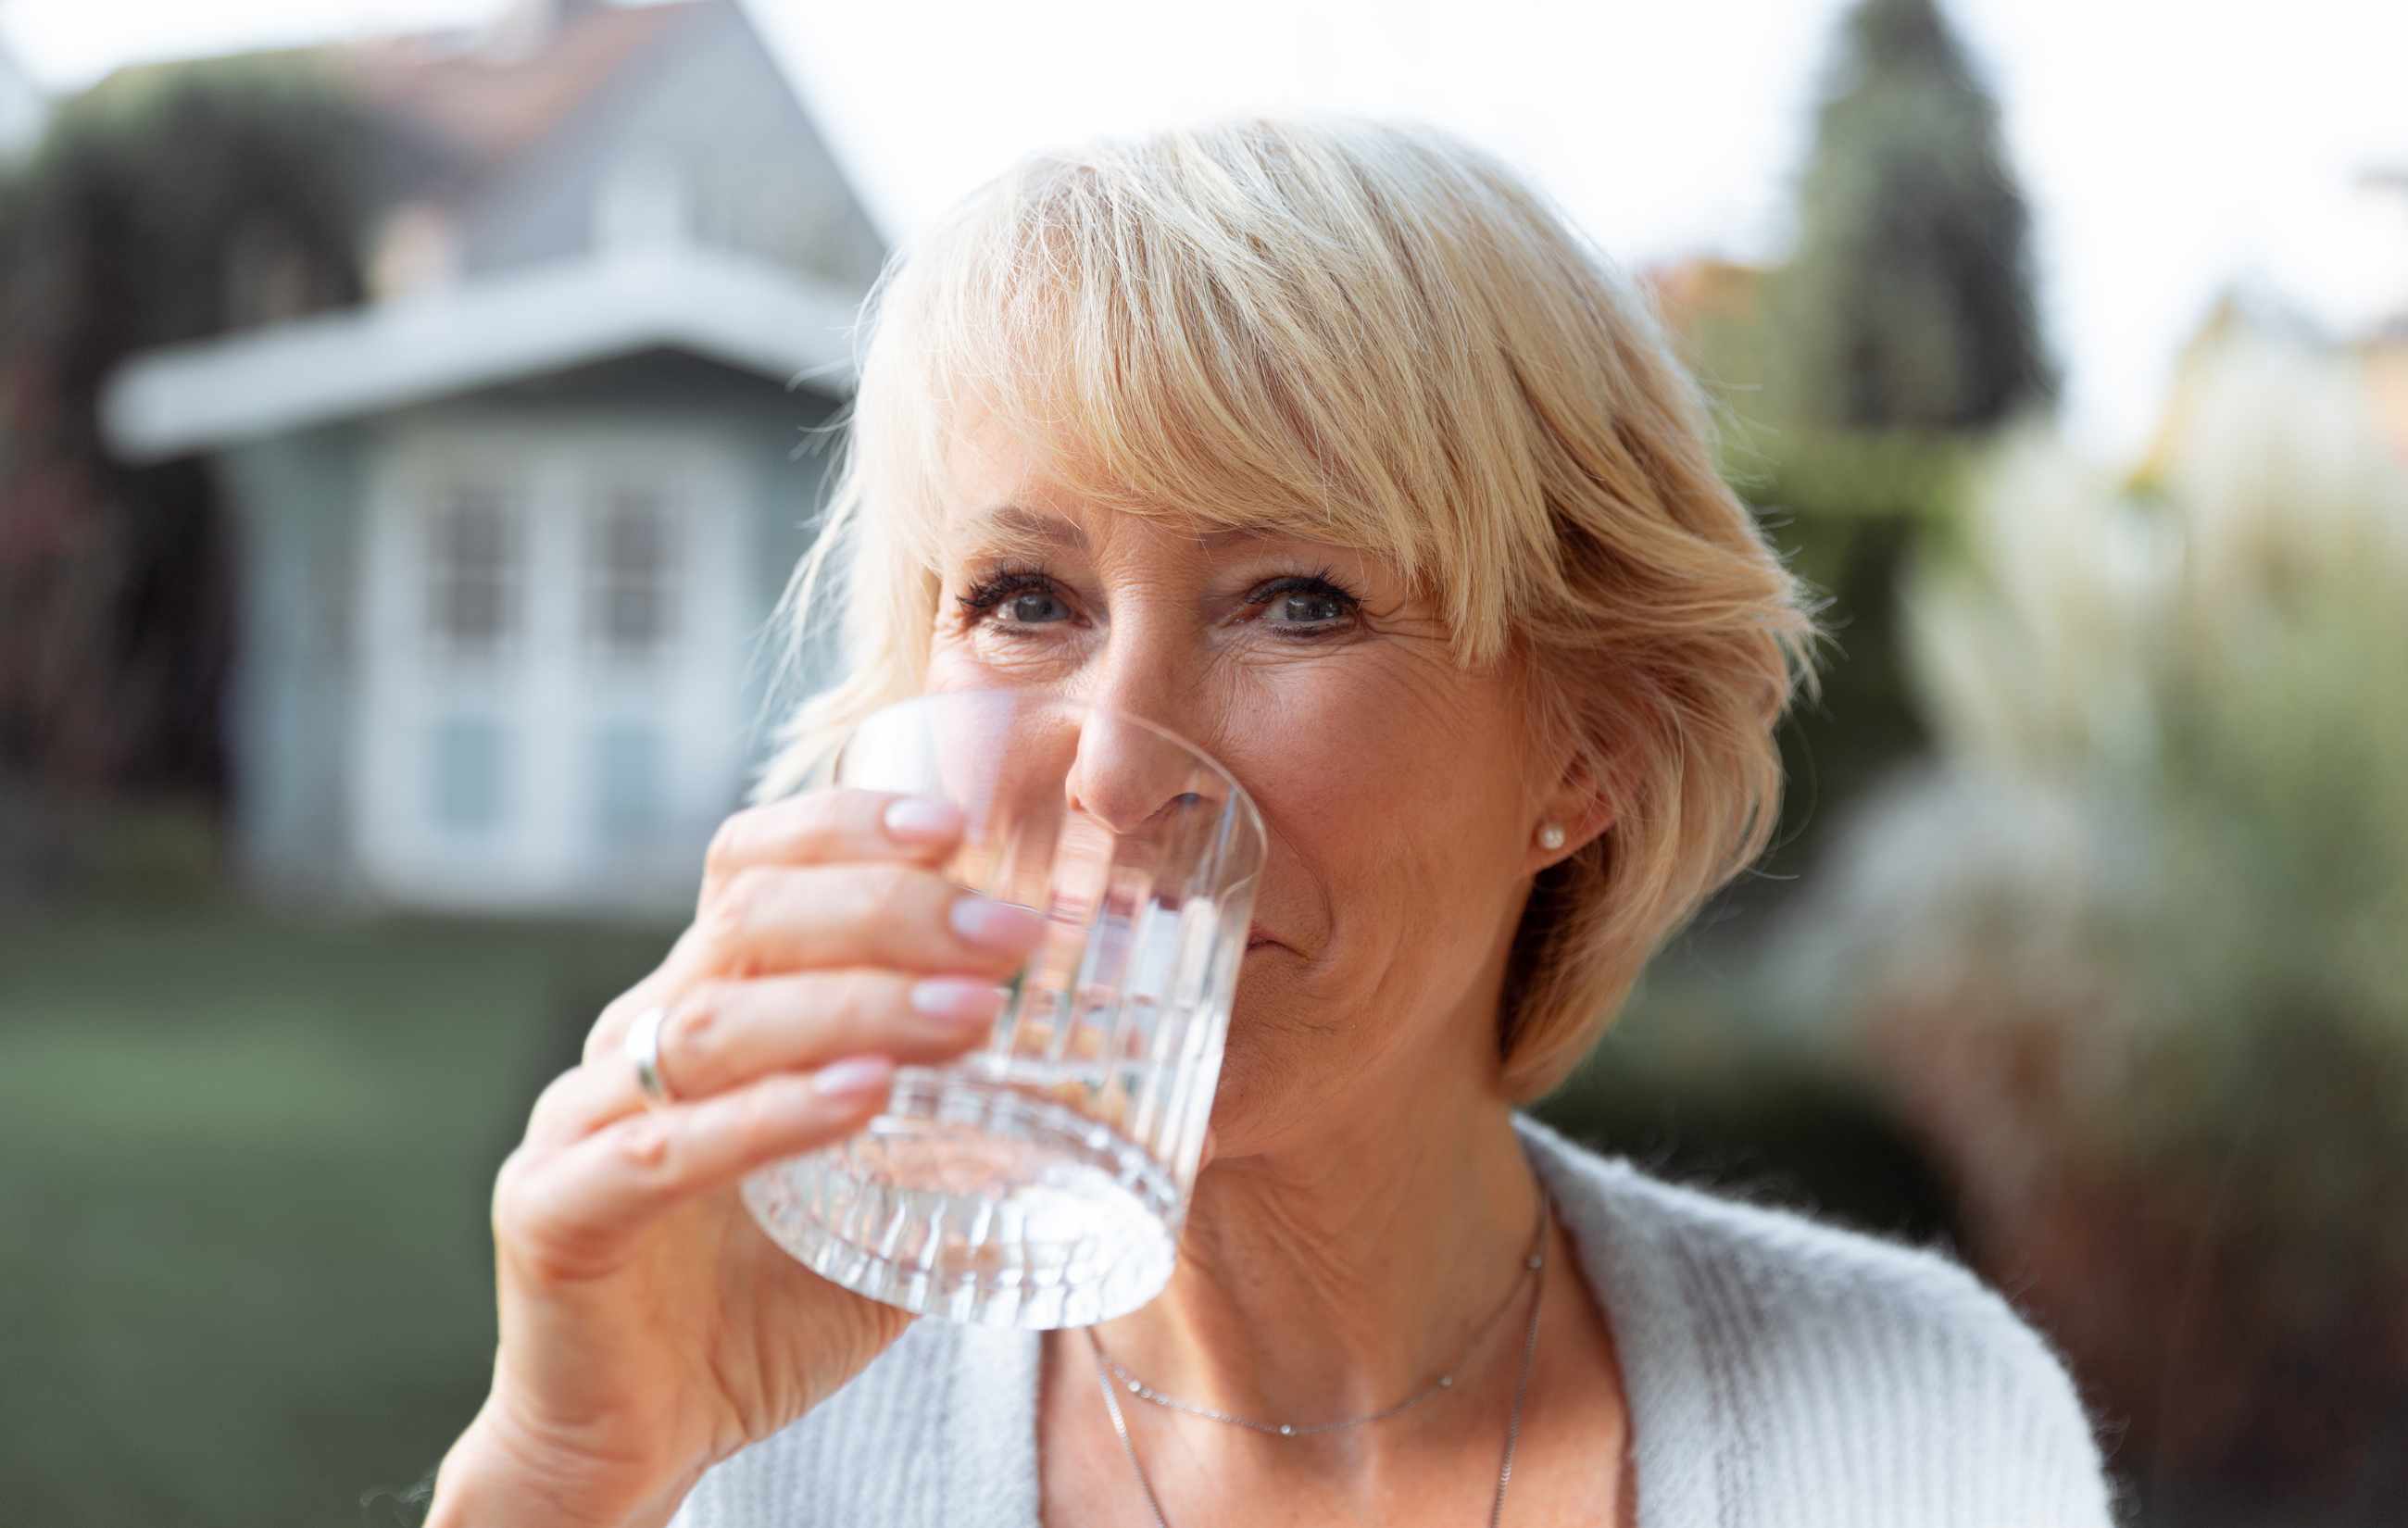 Hormone im Trinkwasser - warum und was wir tun können